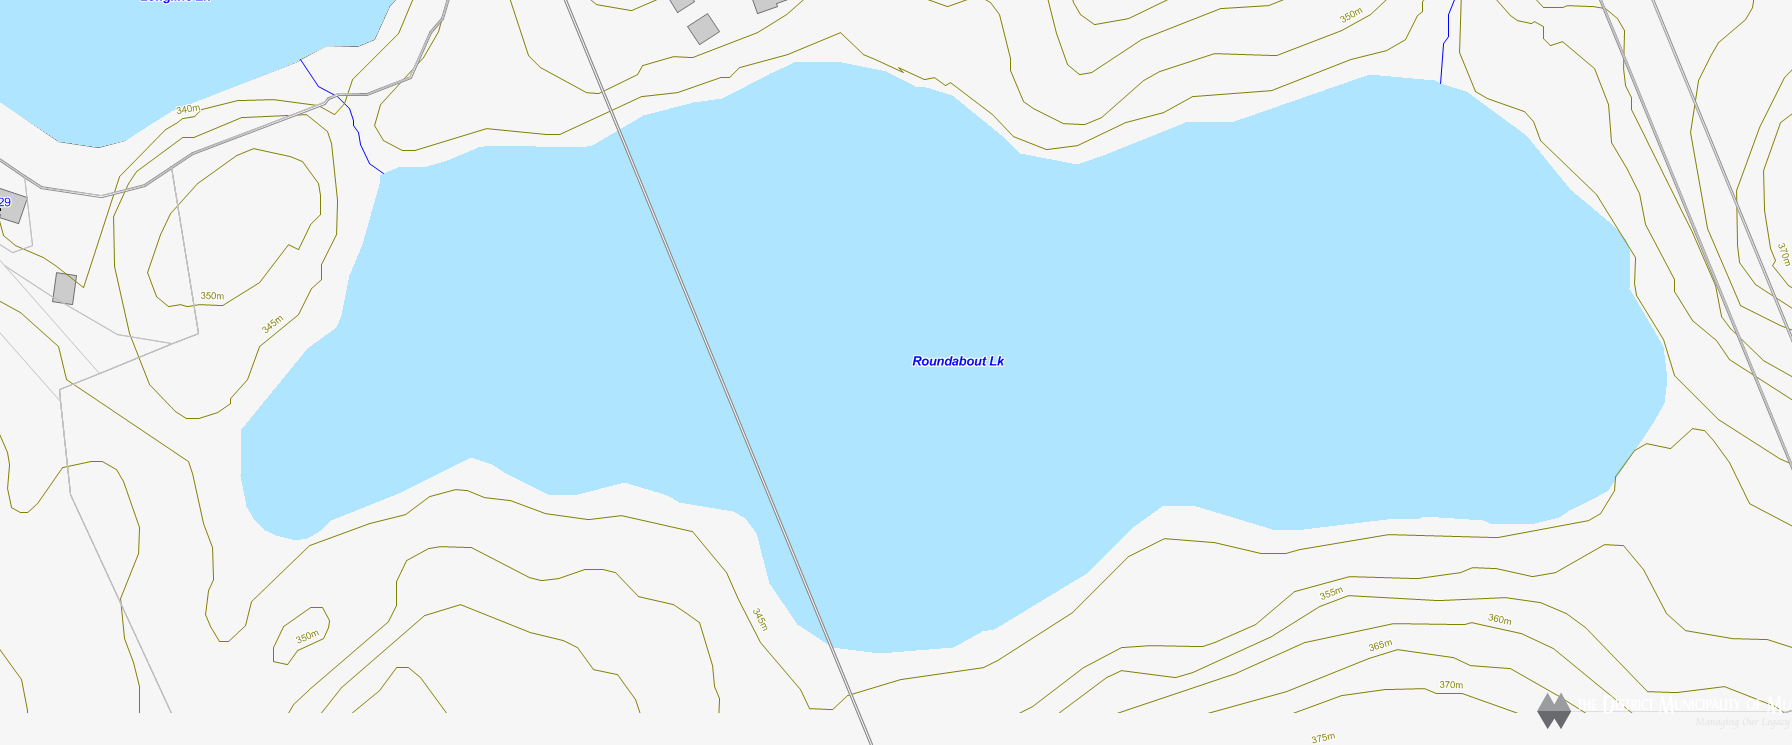 Roundabout Lake Cadastral Map - Roundabout Lake - Muskoka